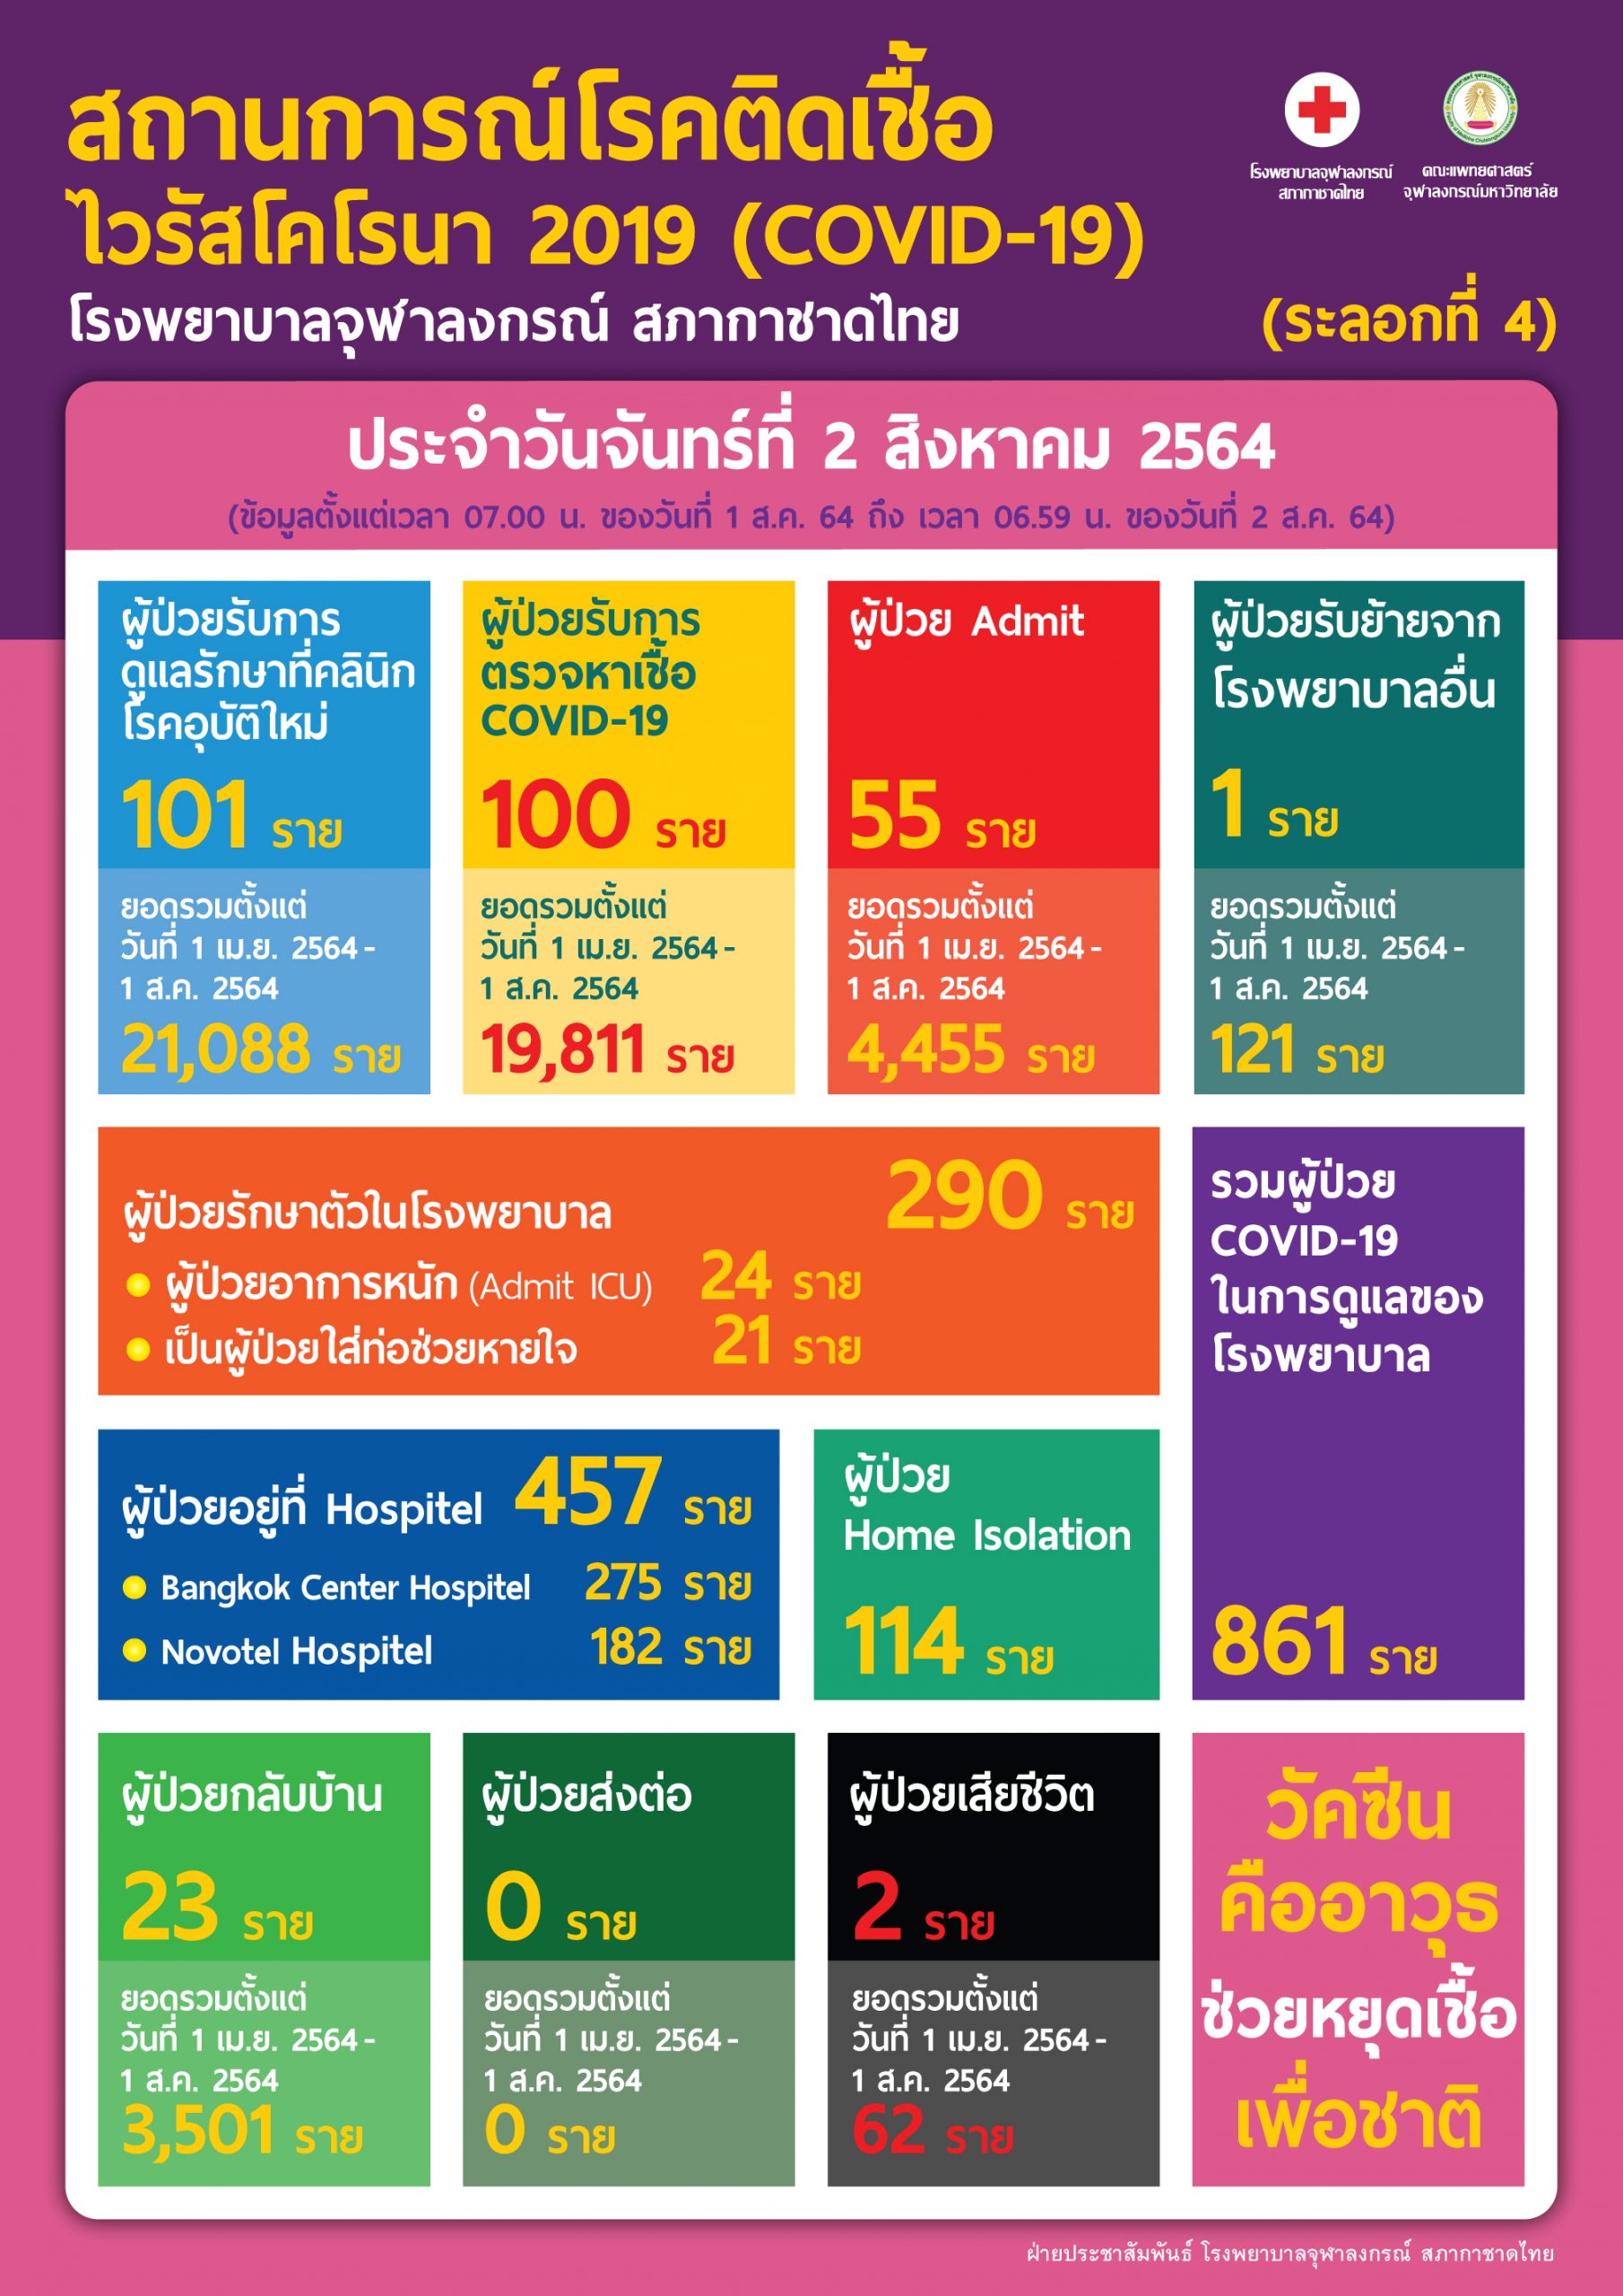 สถานการณ์โรคติดเชื้อไวรัสโคโรนา 2019 (COVID-19) (ระลอกที่ 4) โรงพยาบาลจุฬาลงกรณ์ สภากาชาดไทย ประจำวันจันทร์ที่ 2 สิงหาคม 2564